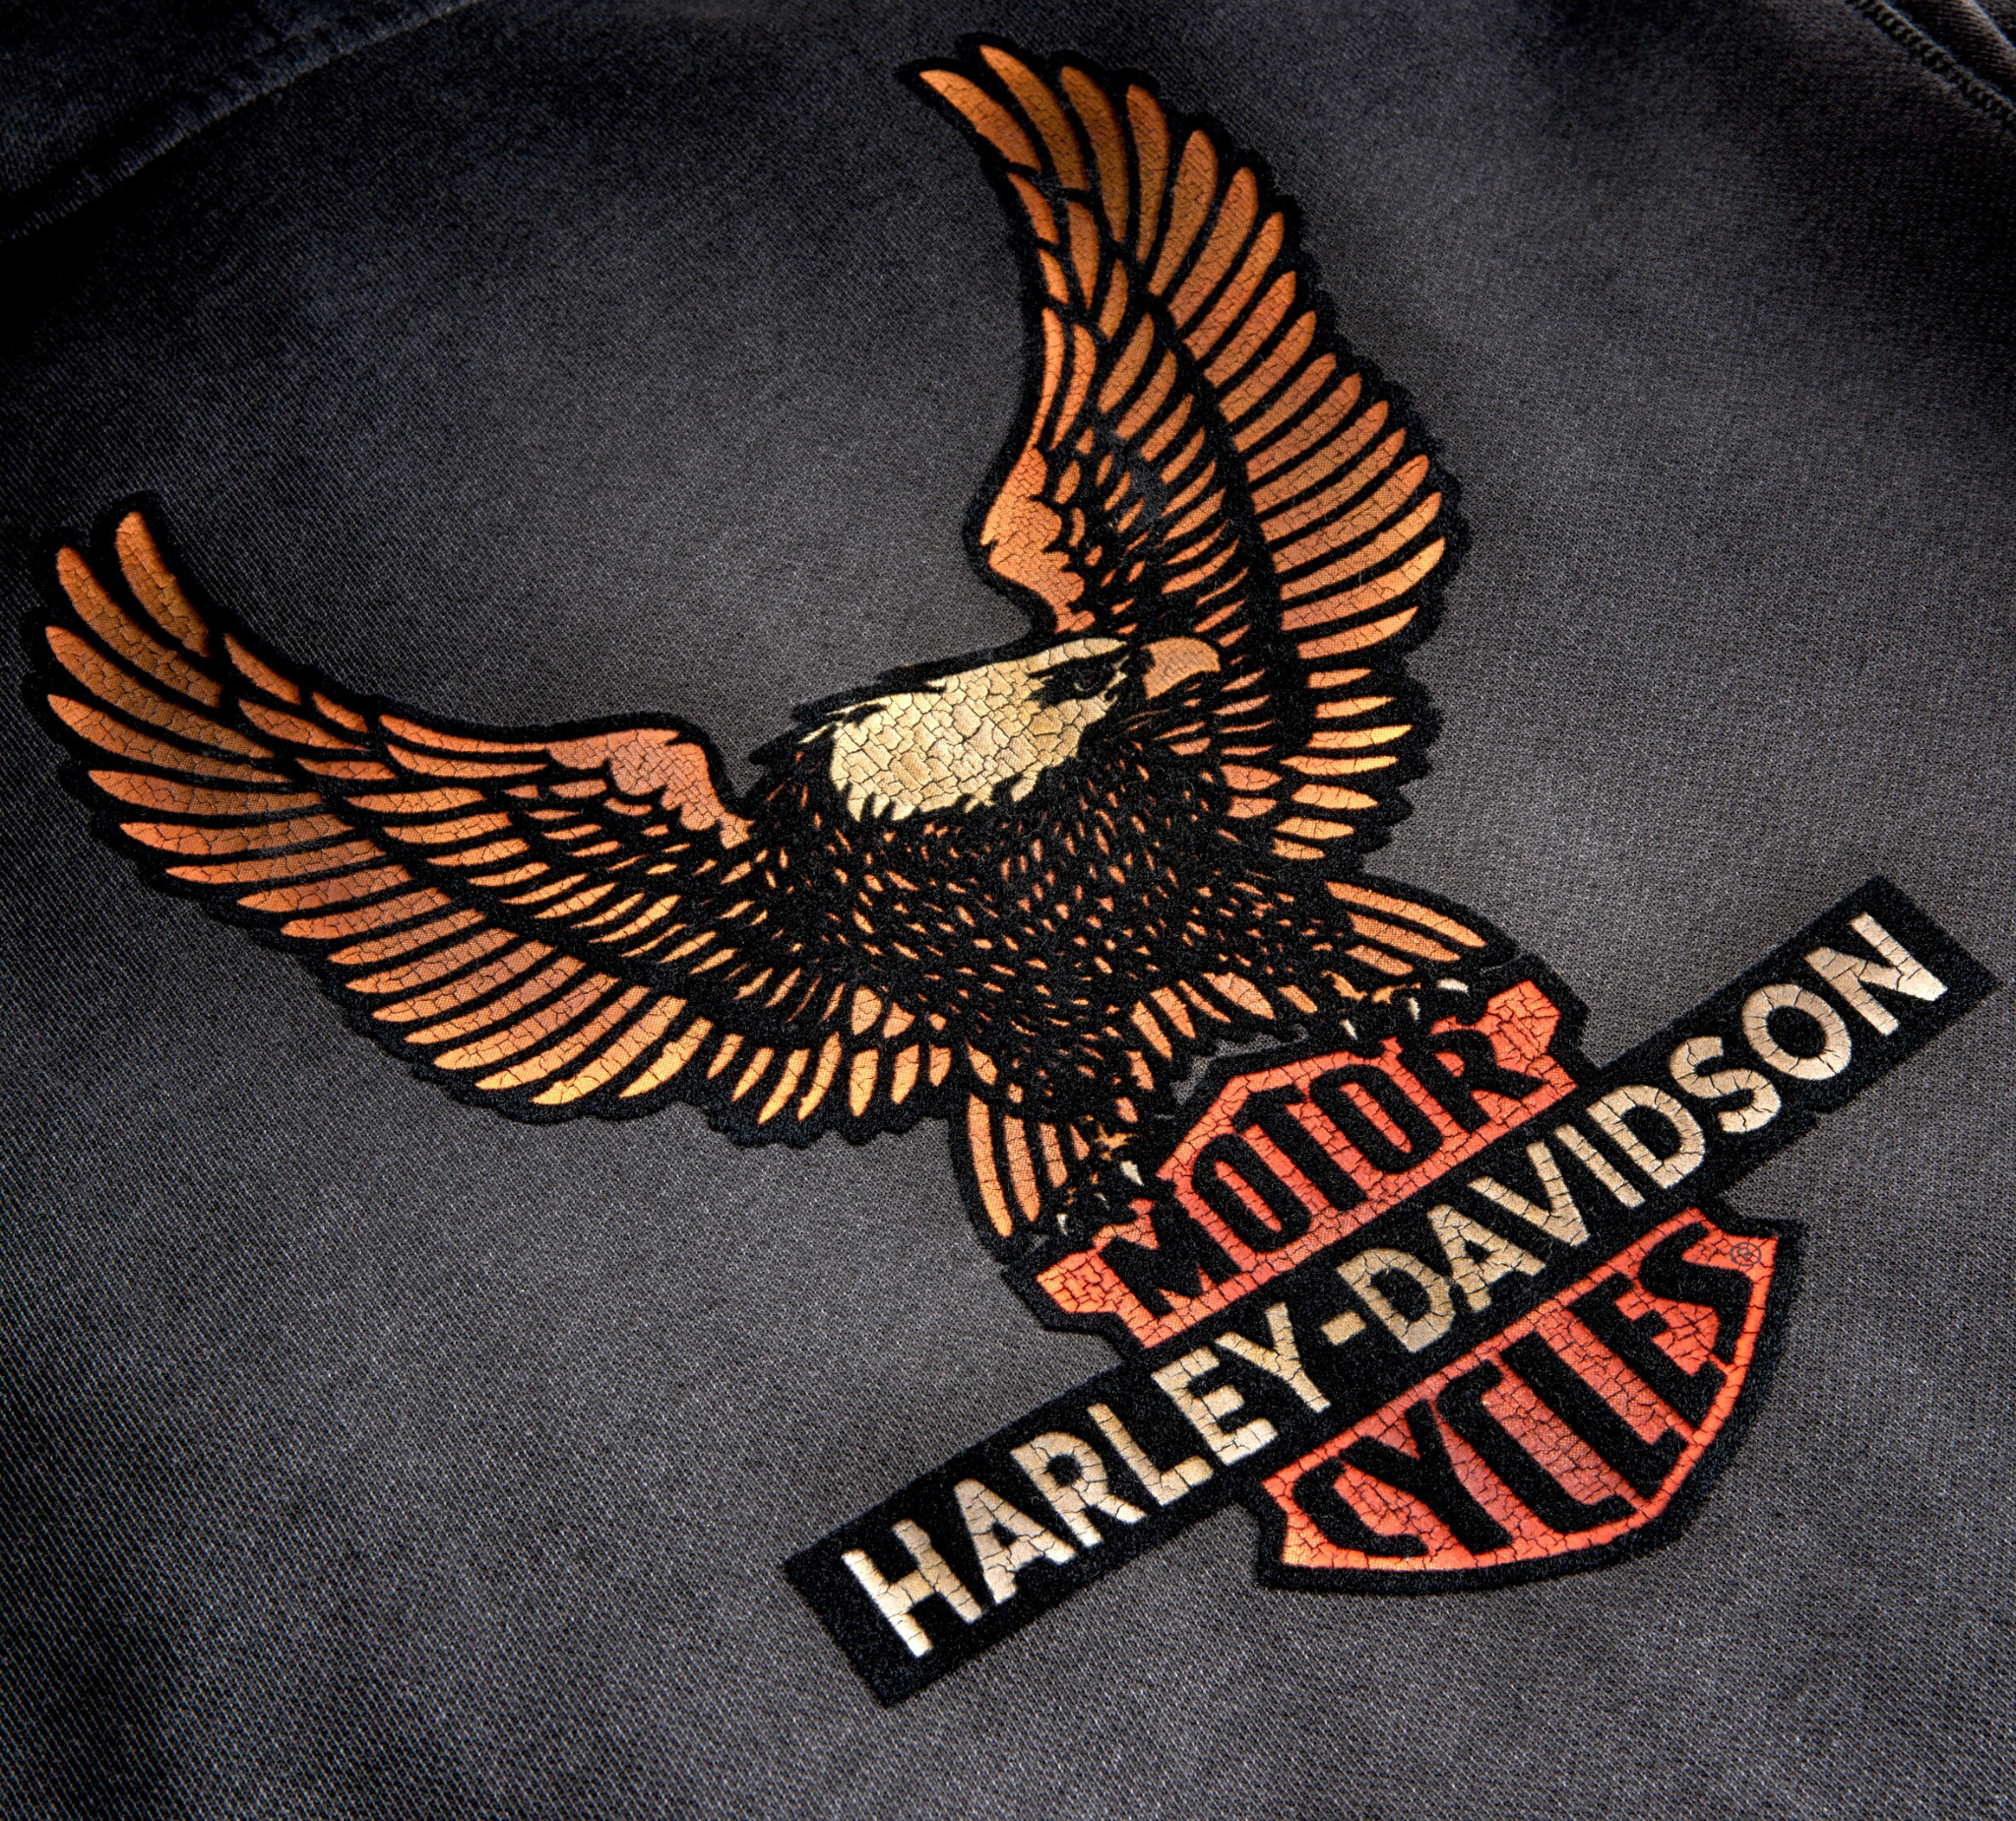 Eagle Bank Harley Davidson Off 69 Medpharmres Com